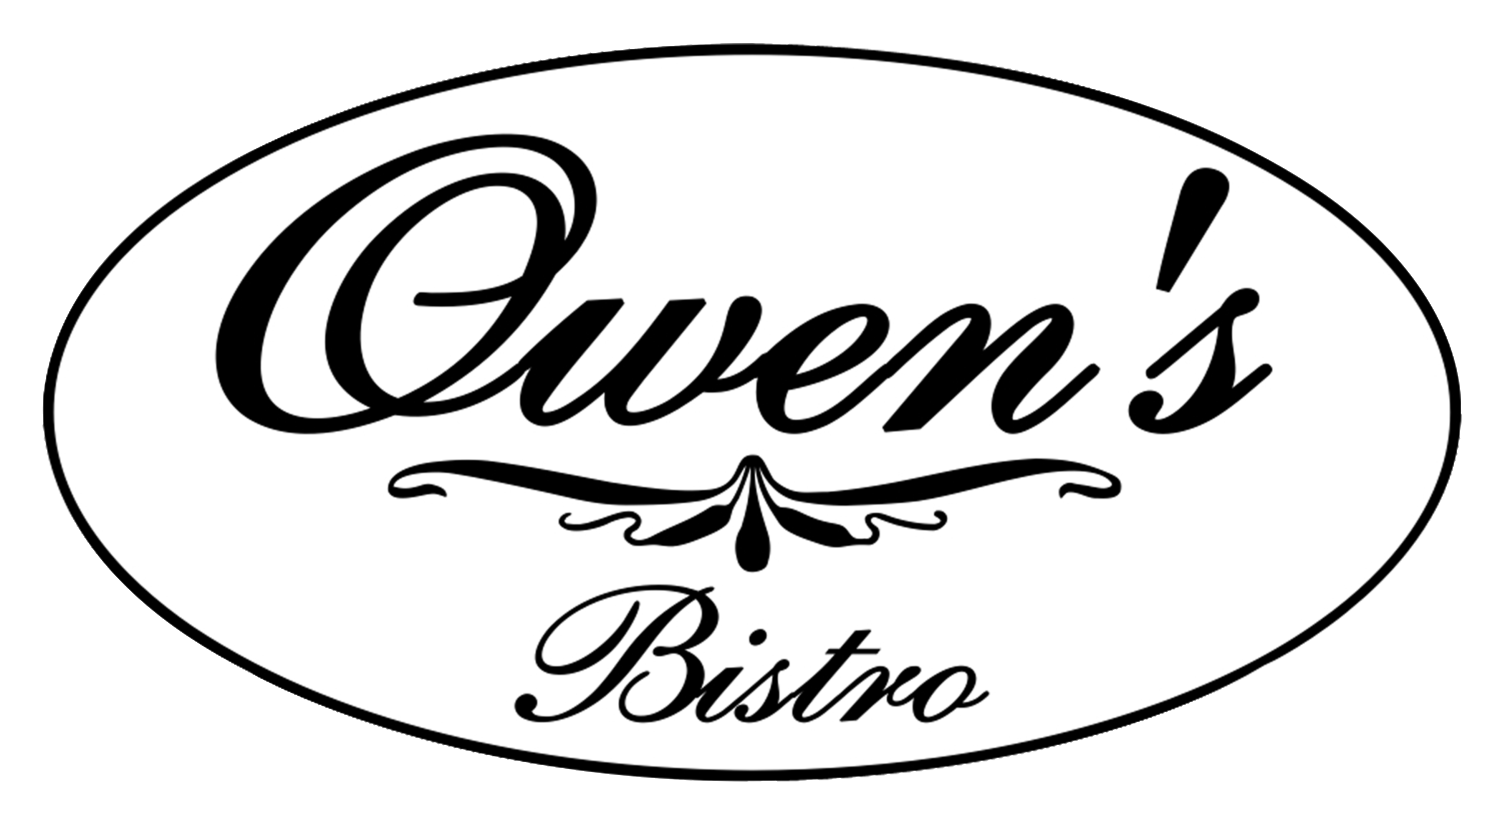 Owen’s Bistro